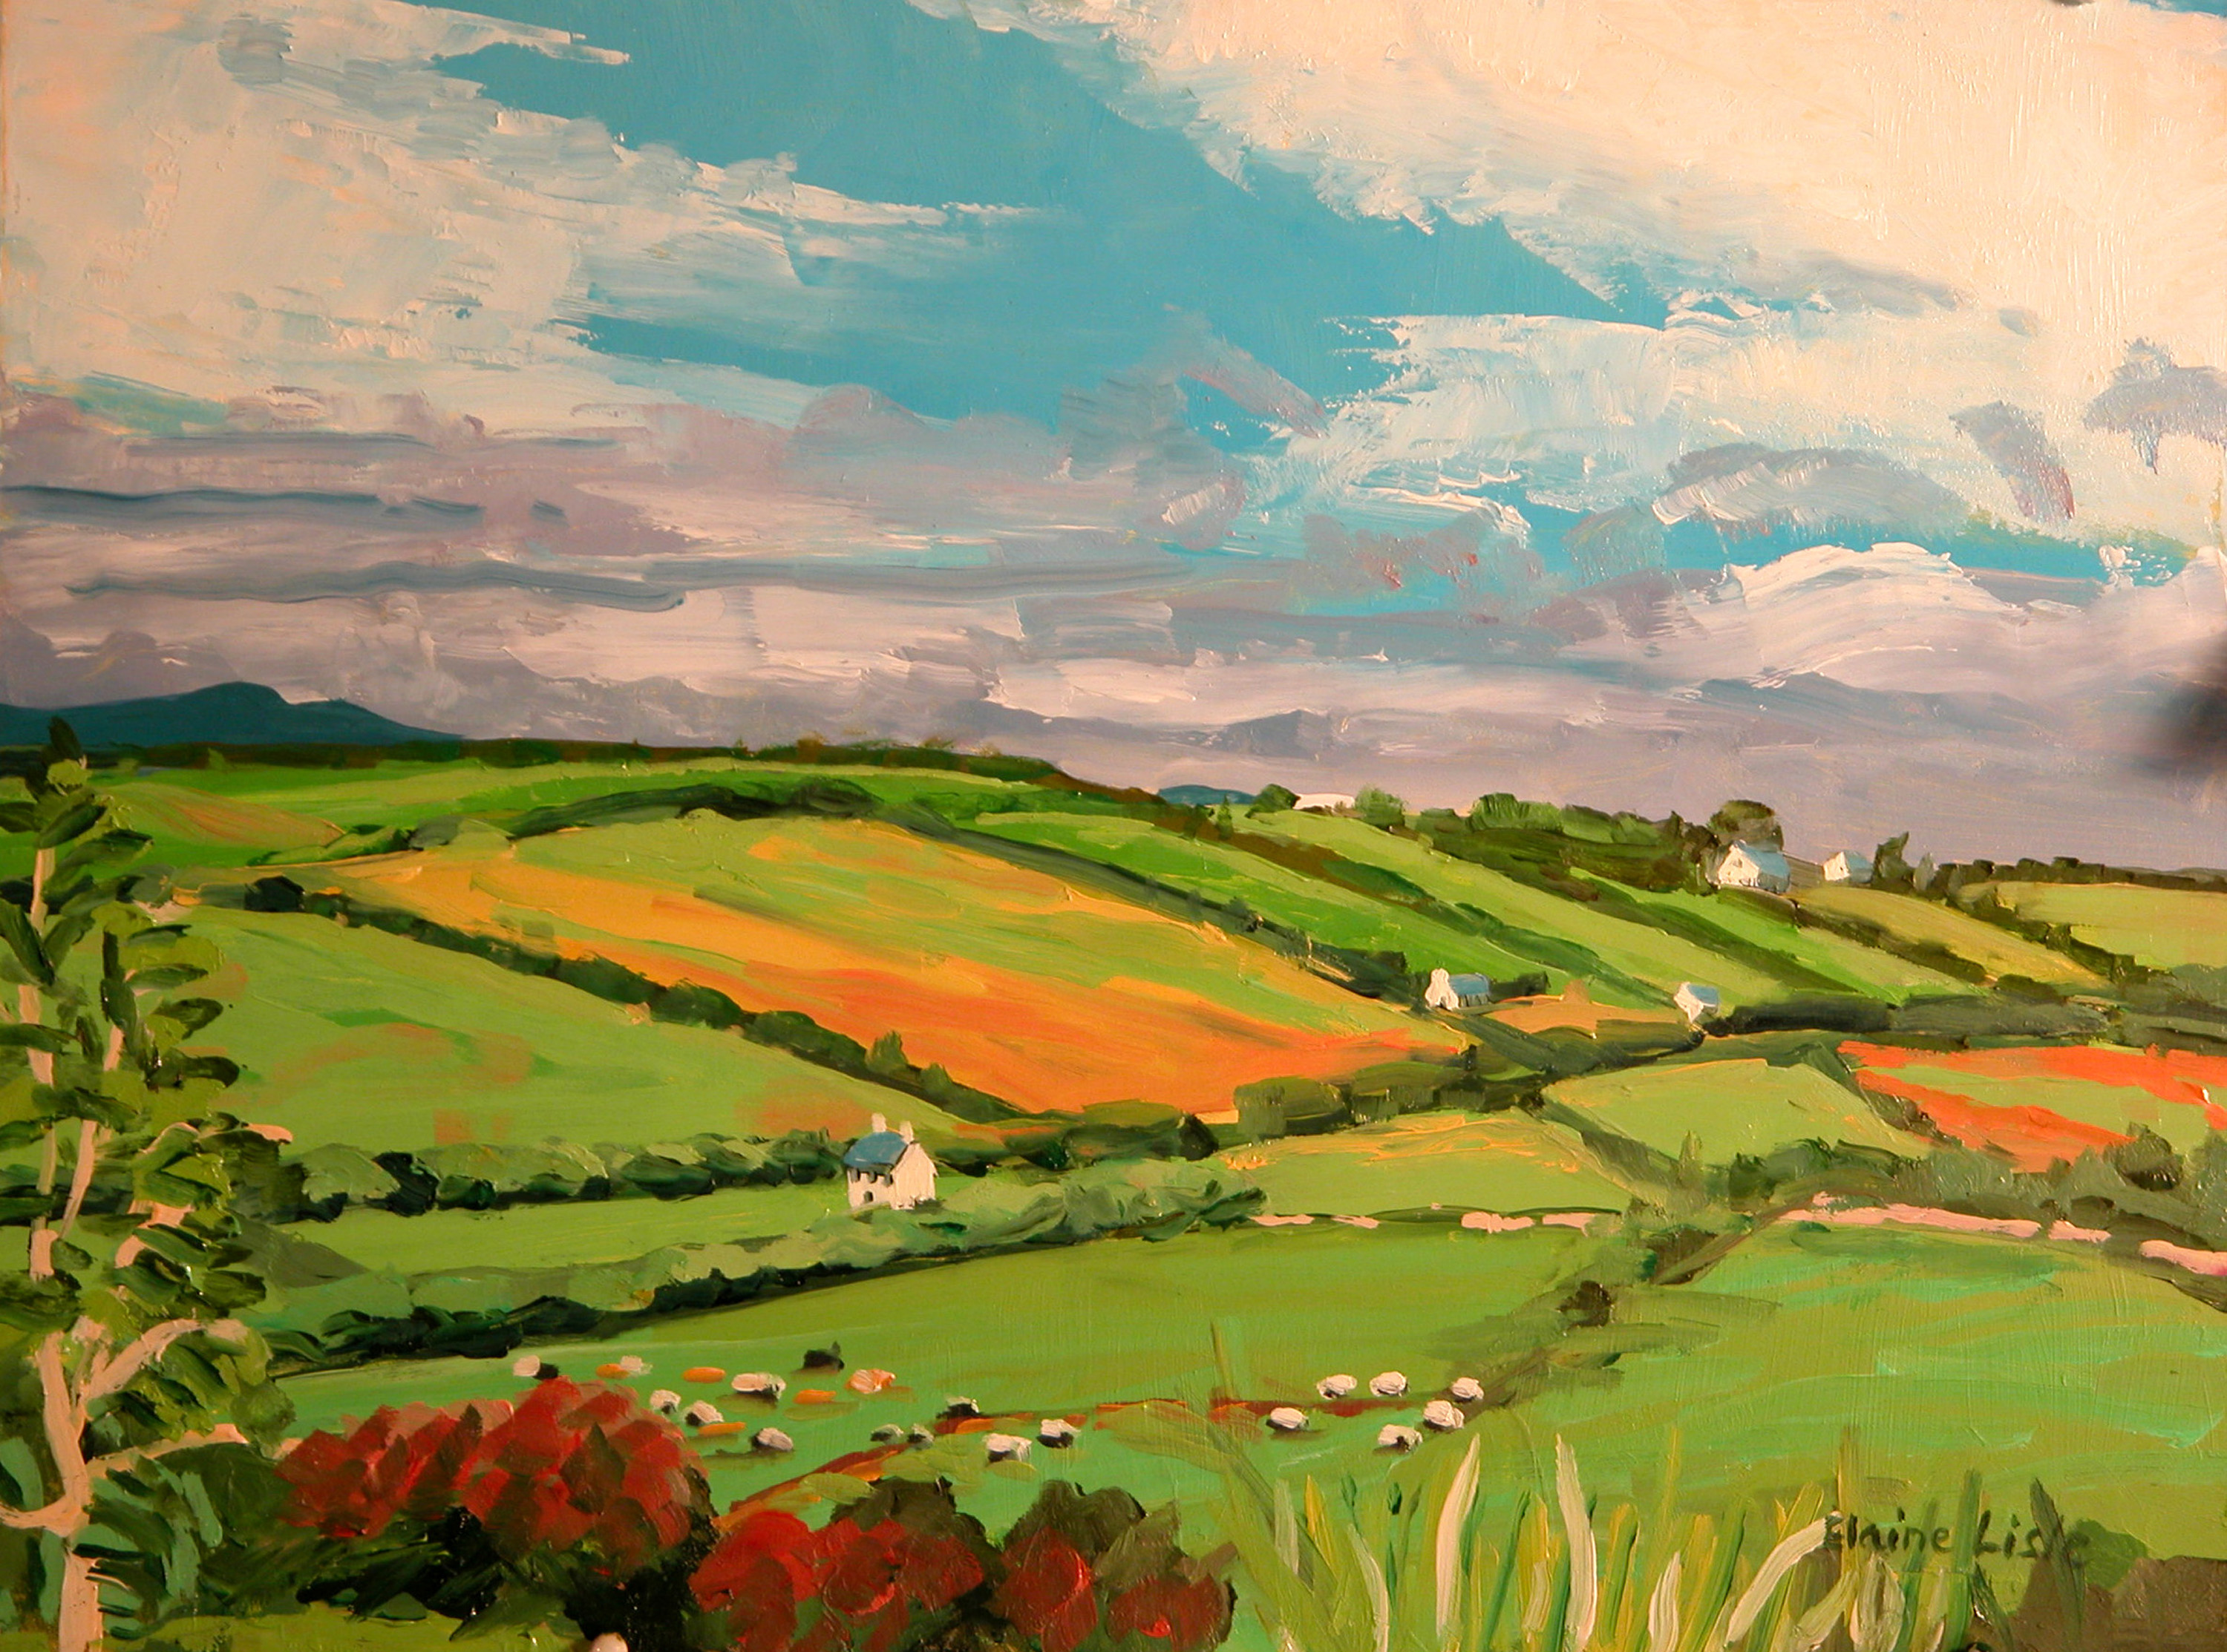 paintings, clouds, landscapes, fields, hills, villages - desktop wallpaper